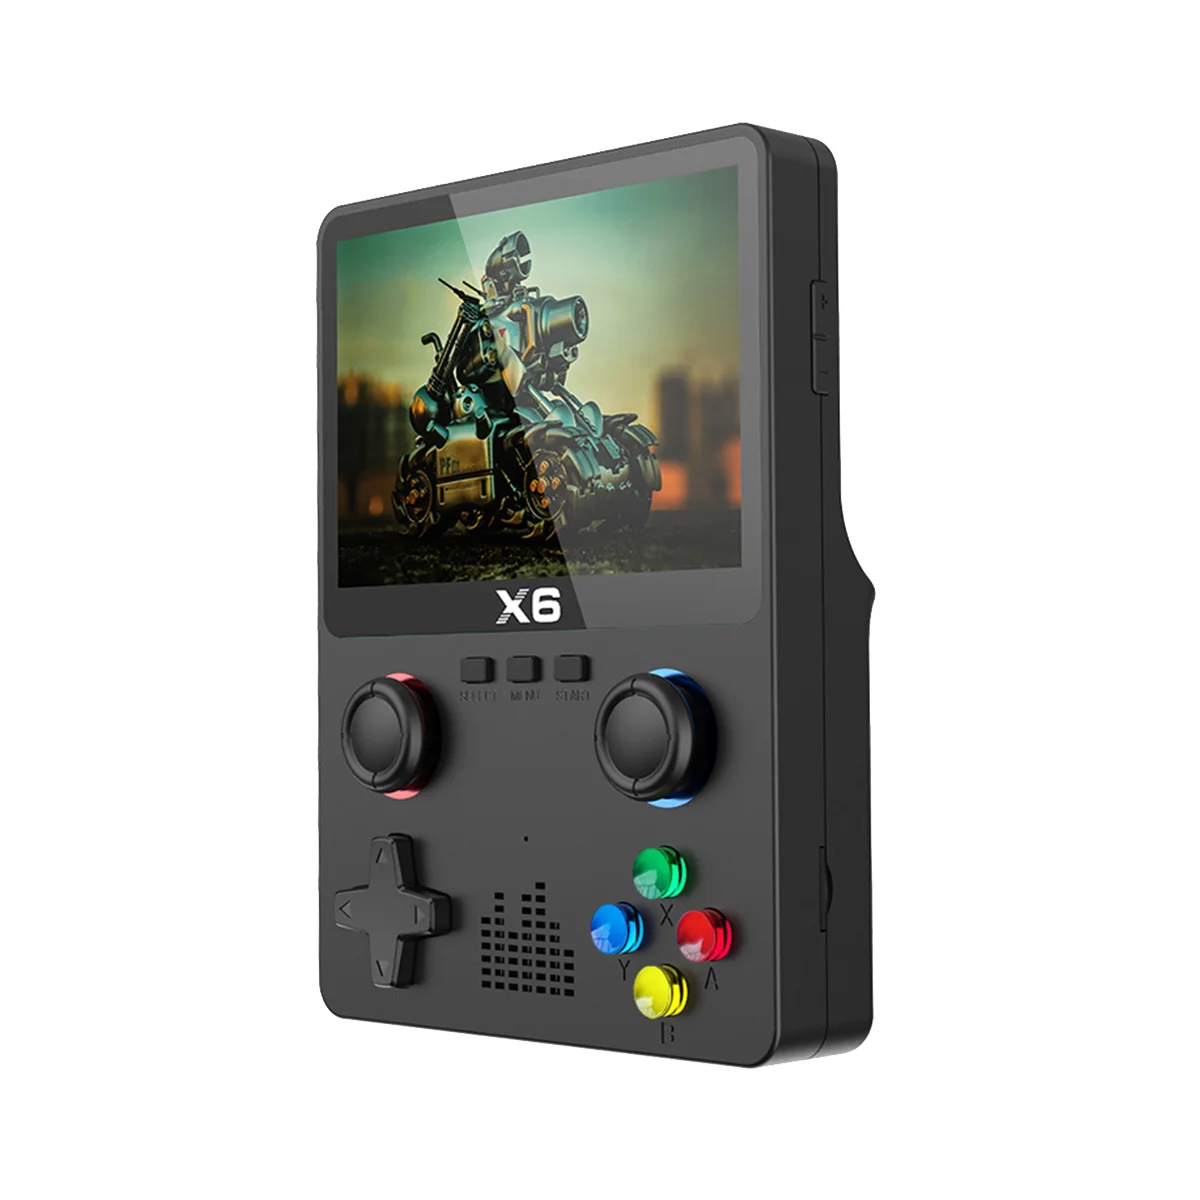 Портативный Портативный игровой плеер X6 с 3,5-дюймовым IPS-экраном, 11 симуляторов, Игровая приставка GBA, подарки для детей-черный